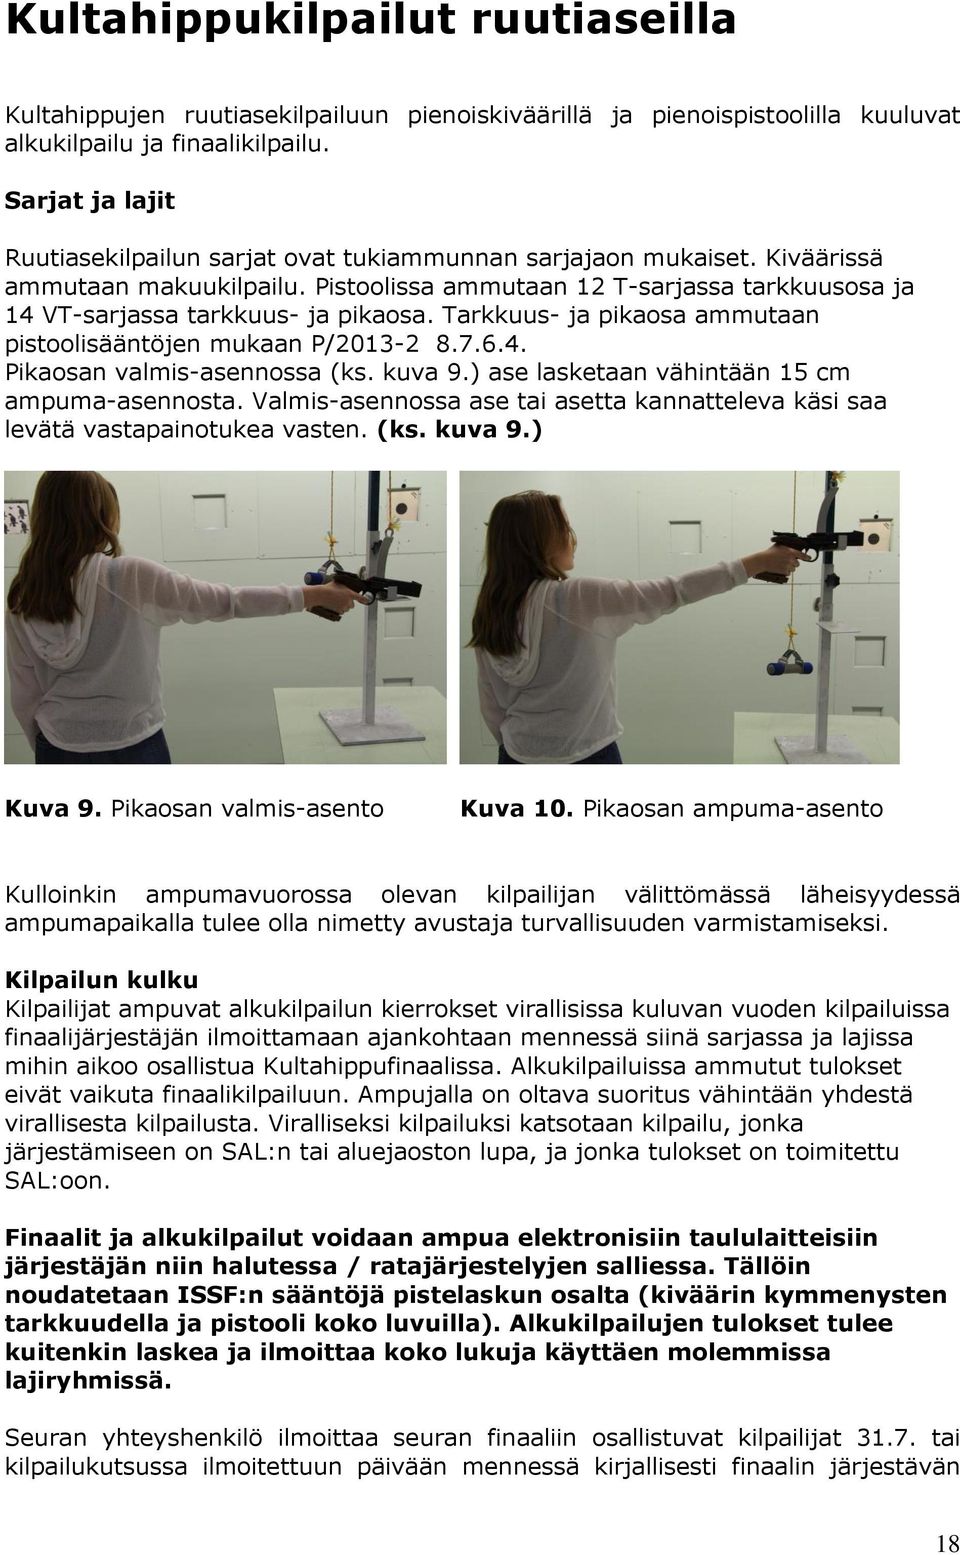 Tarkkuus- ja pikaosa ammutaan pistoolisääntöjen mukaan P/2013-2 8.7.6.4. Pikaosan valmis-asennossa (ks. kuva 9.) ase lasketaan vähintään 15 cm ampuma-asennosta.